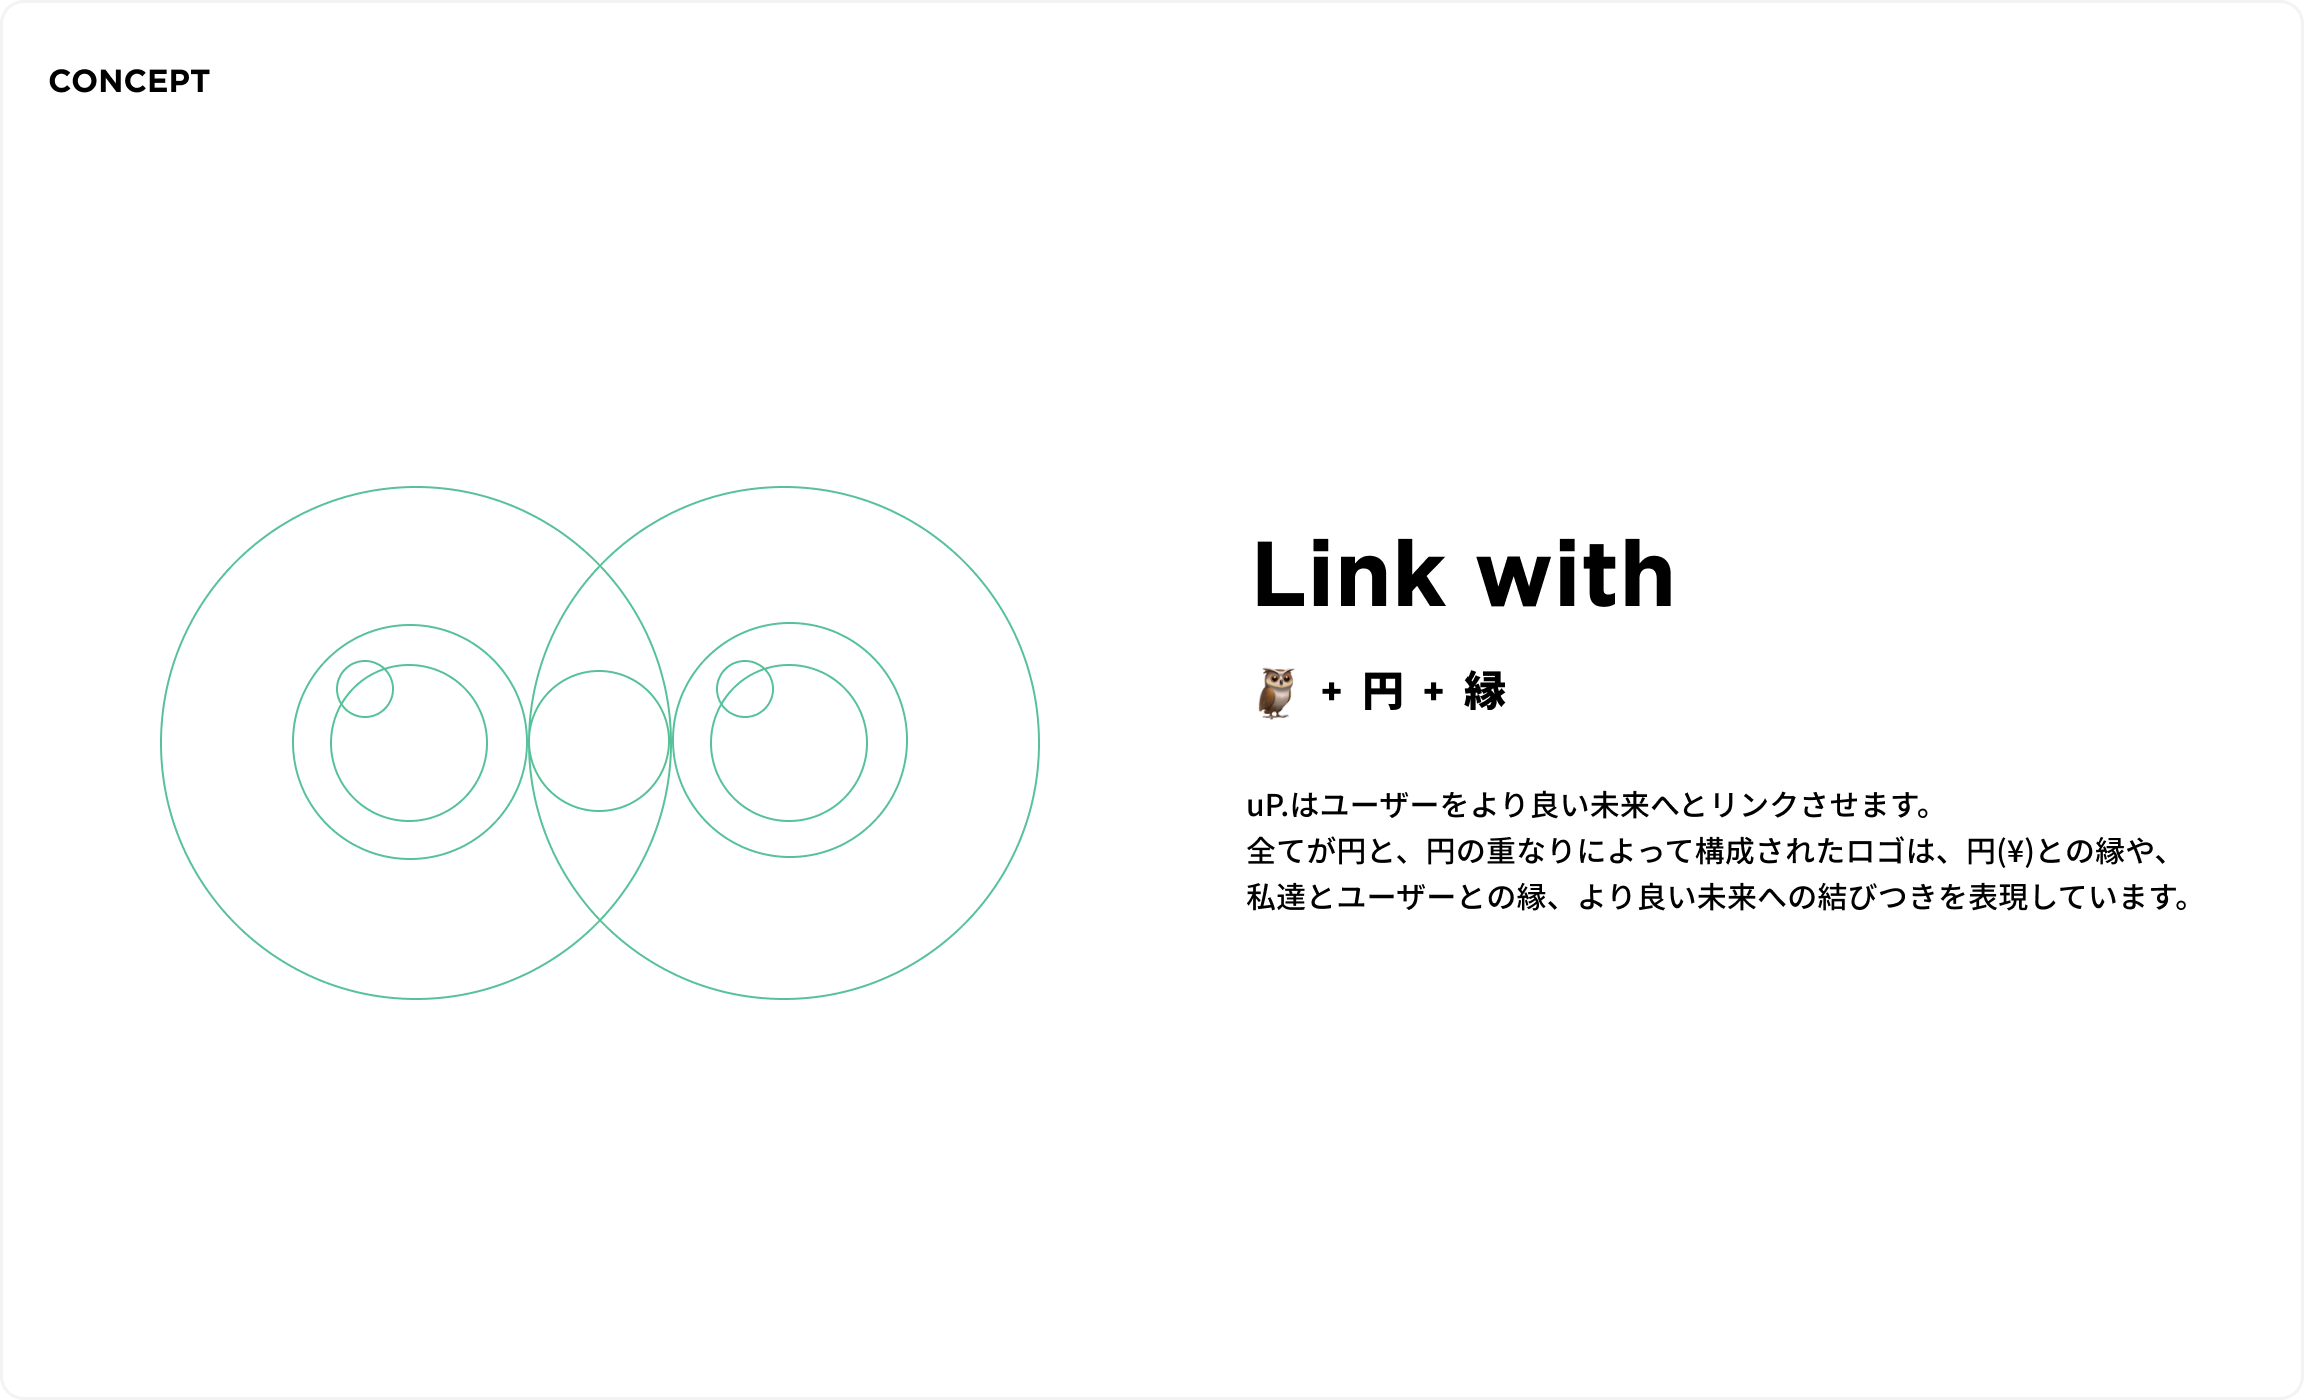 コンセプト。Link with フクロウ＋円＋緑。uP.はユーザーをより良い未来へとリンクさせます。全てが円と、円の重なりによって構成されたロゴは、円(¥)との縁や、私達とユーザーとの縁、より良い未来への結びつきを表現しています。